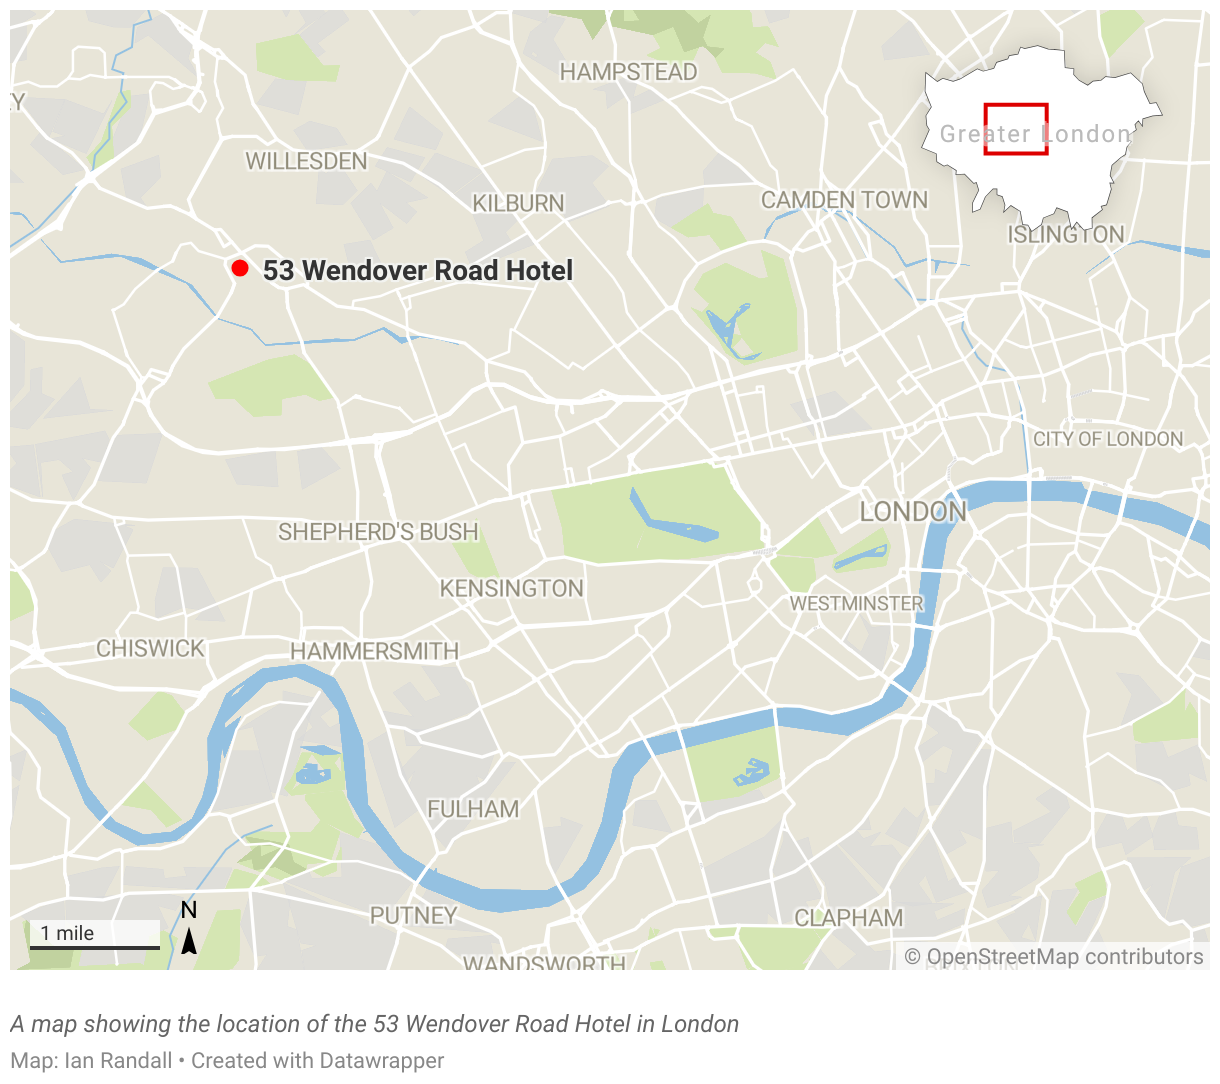 Eine Karte, die den Standort des 53 Wendover Road Hotels in London zeigt